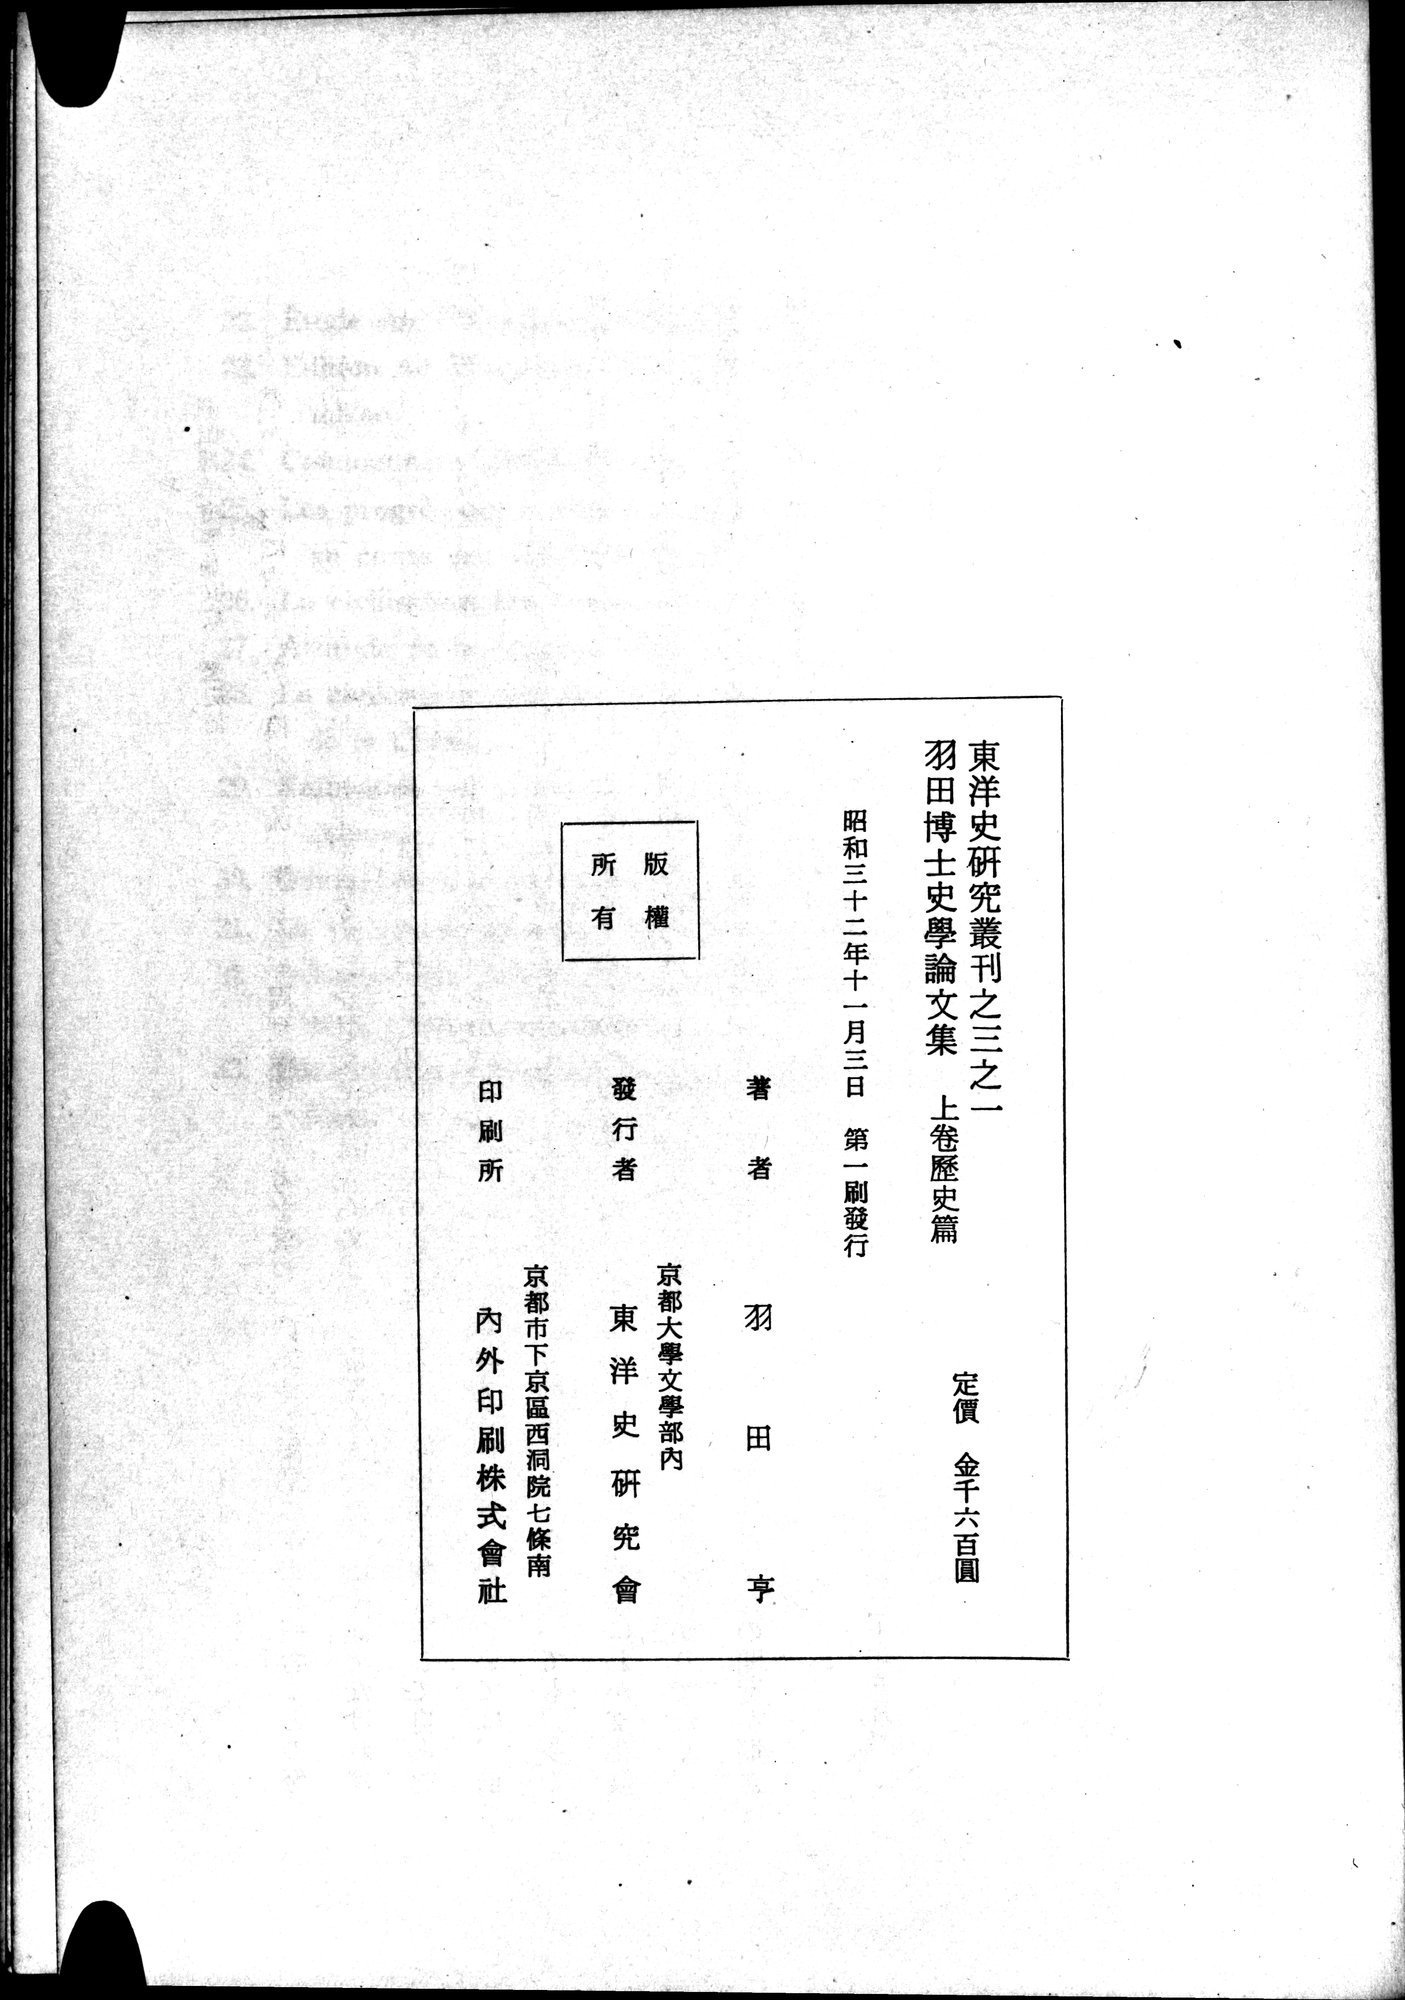 羽田博士史学論文集 : vol.1 / Page 823 (Grayscale High Resolution Image)